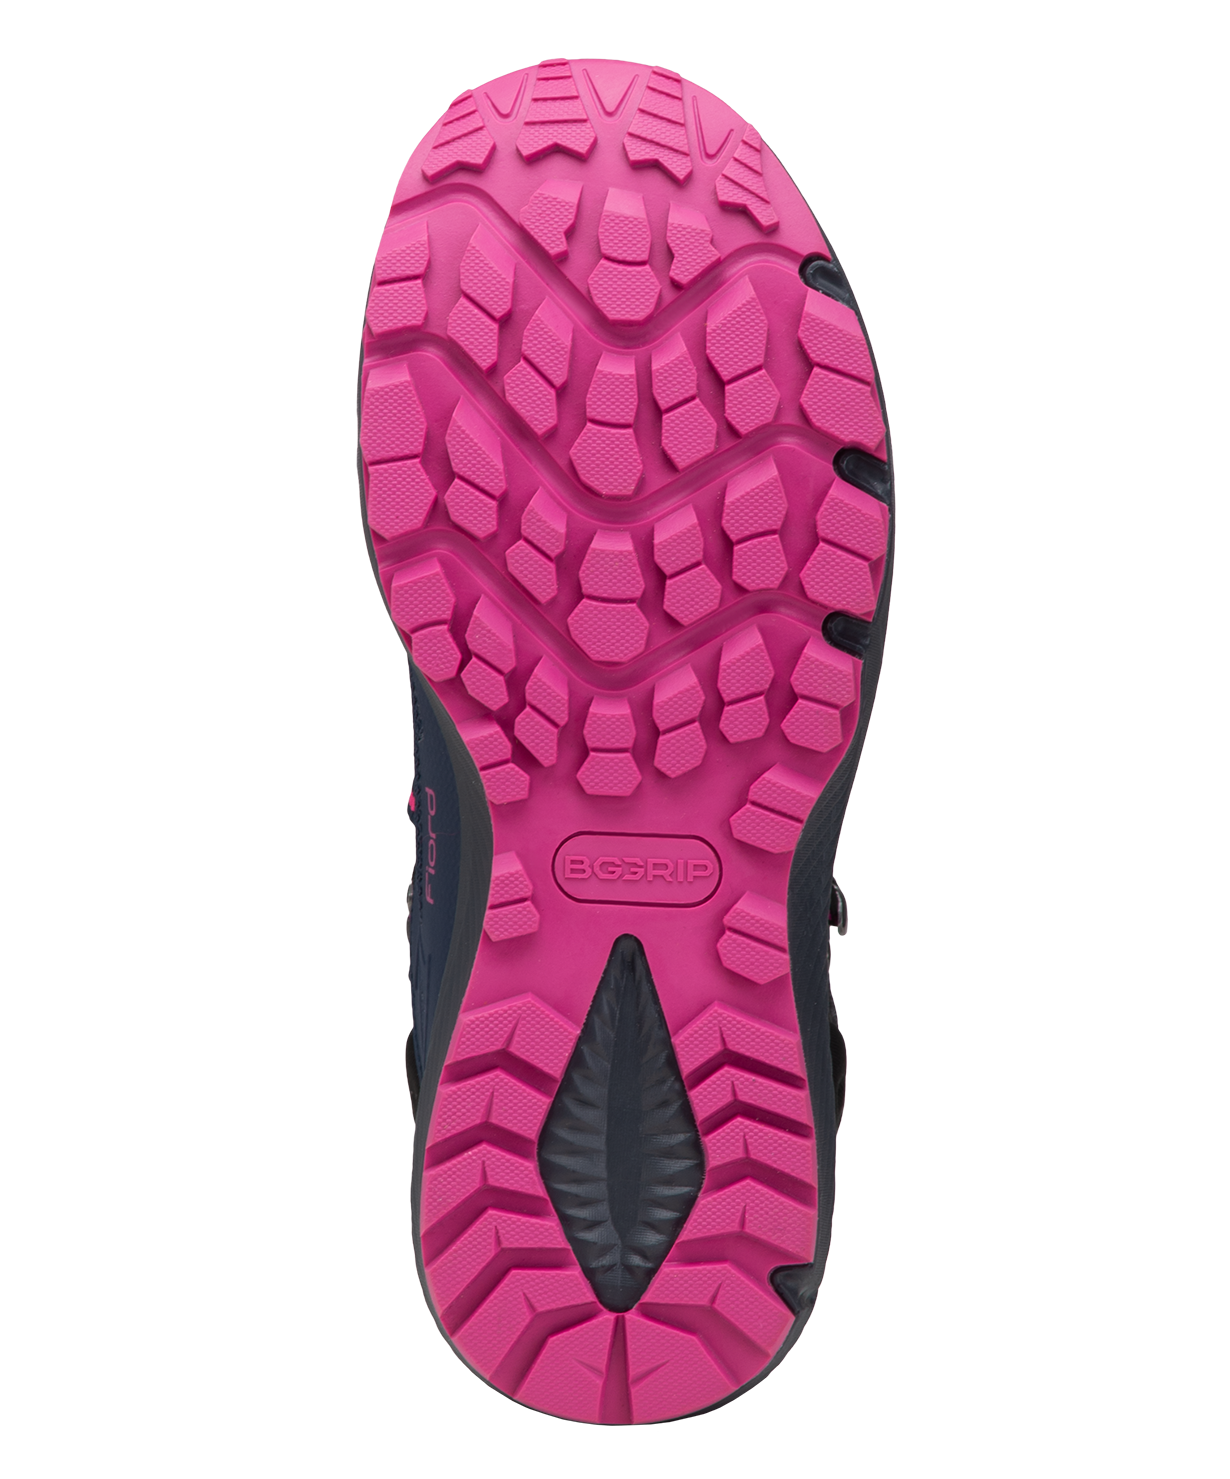 Ботинки Berger Fiord Waterproof, фиолетовый/черный, женский, р. 36-41 размер 39